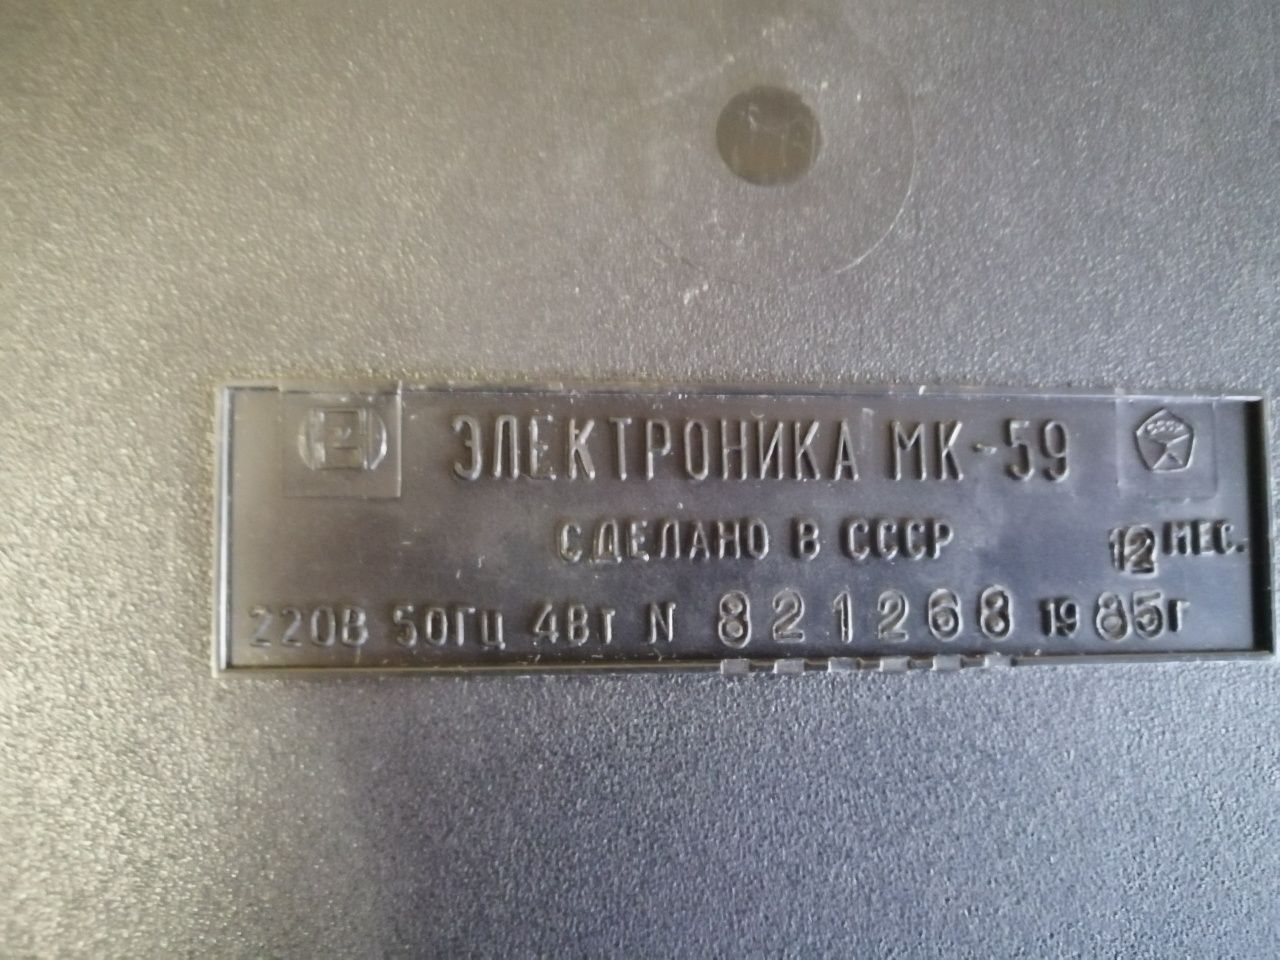 Электронный калькулятор МК-59, рабочий, СССР